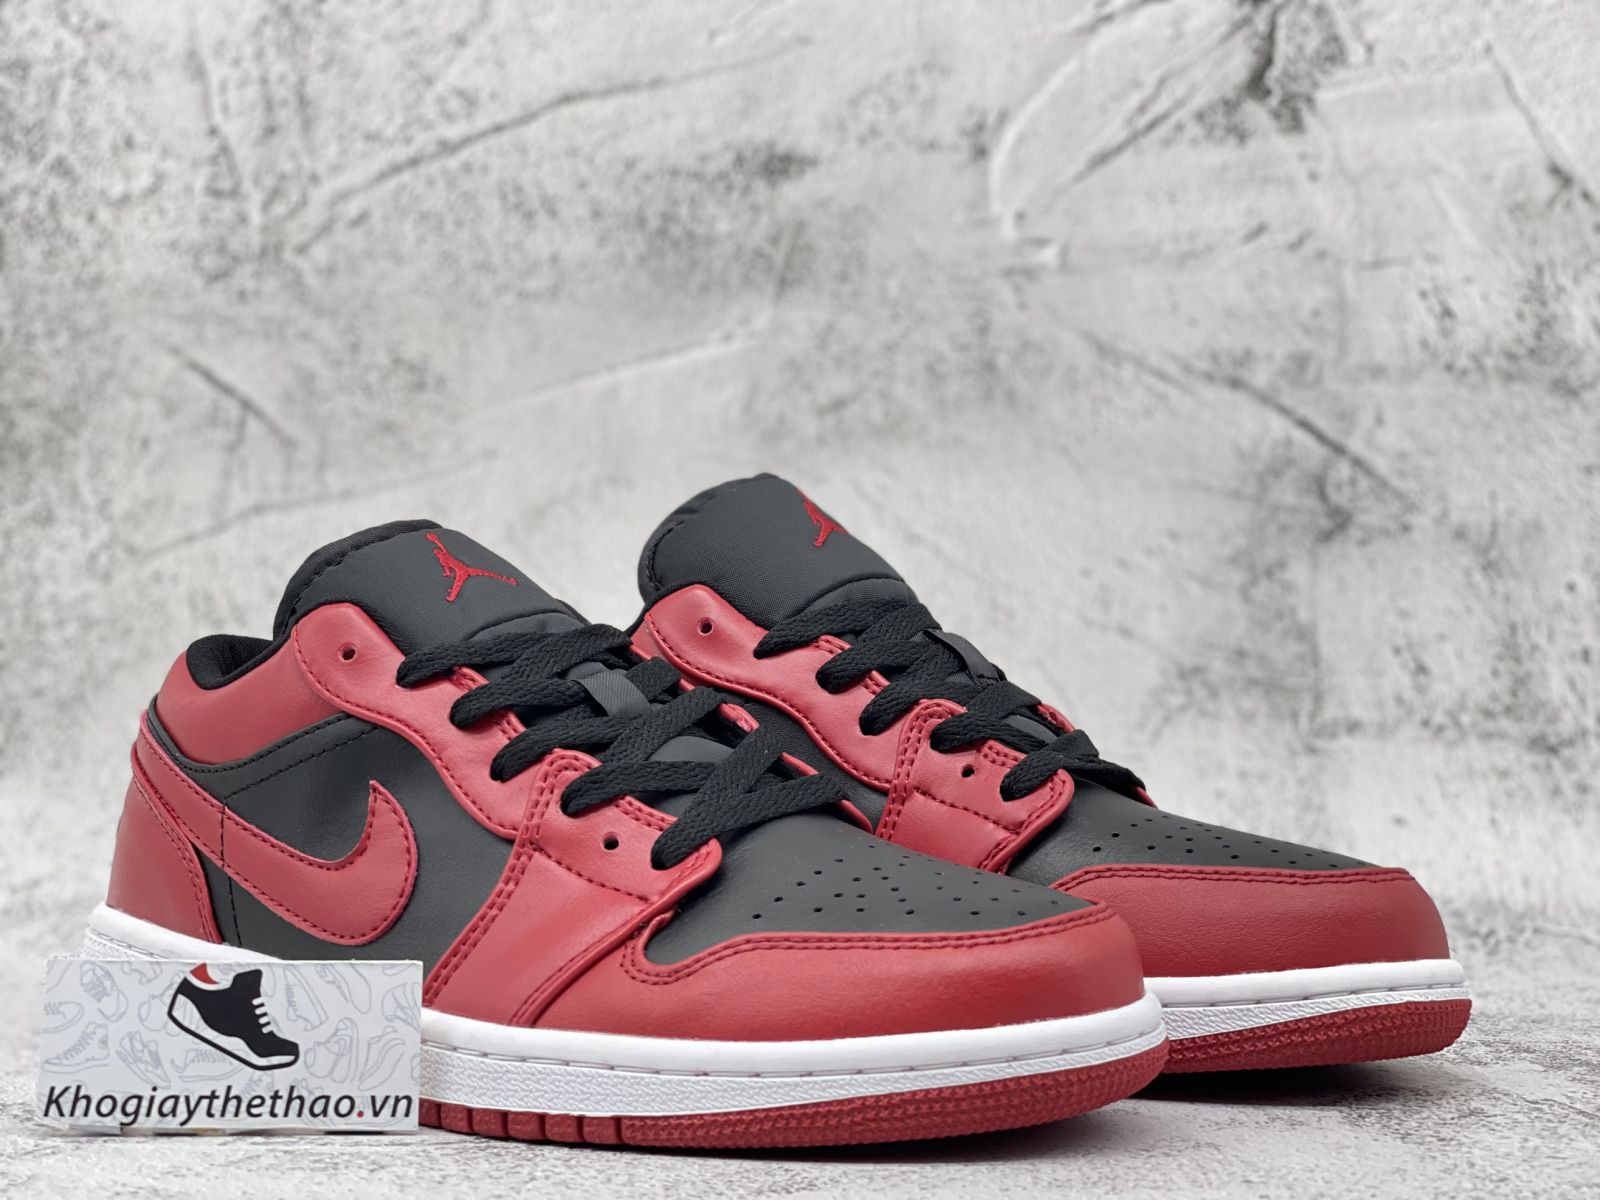 Giày Jordan 1 Low Reverse Bred đỏ đen